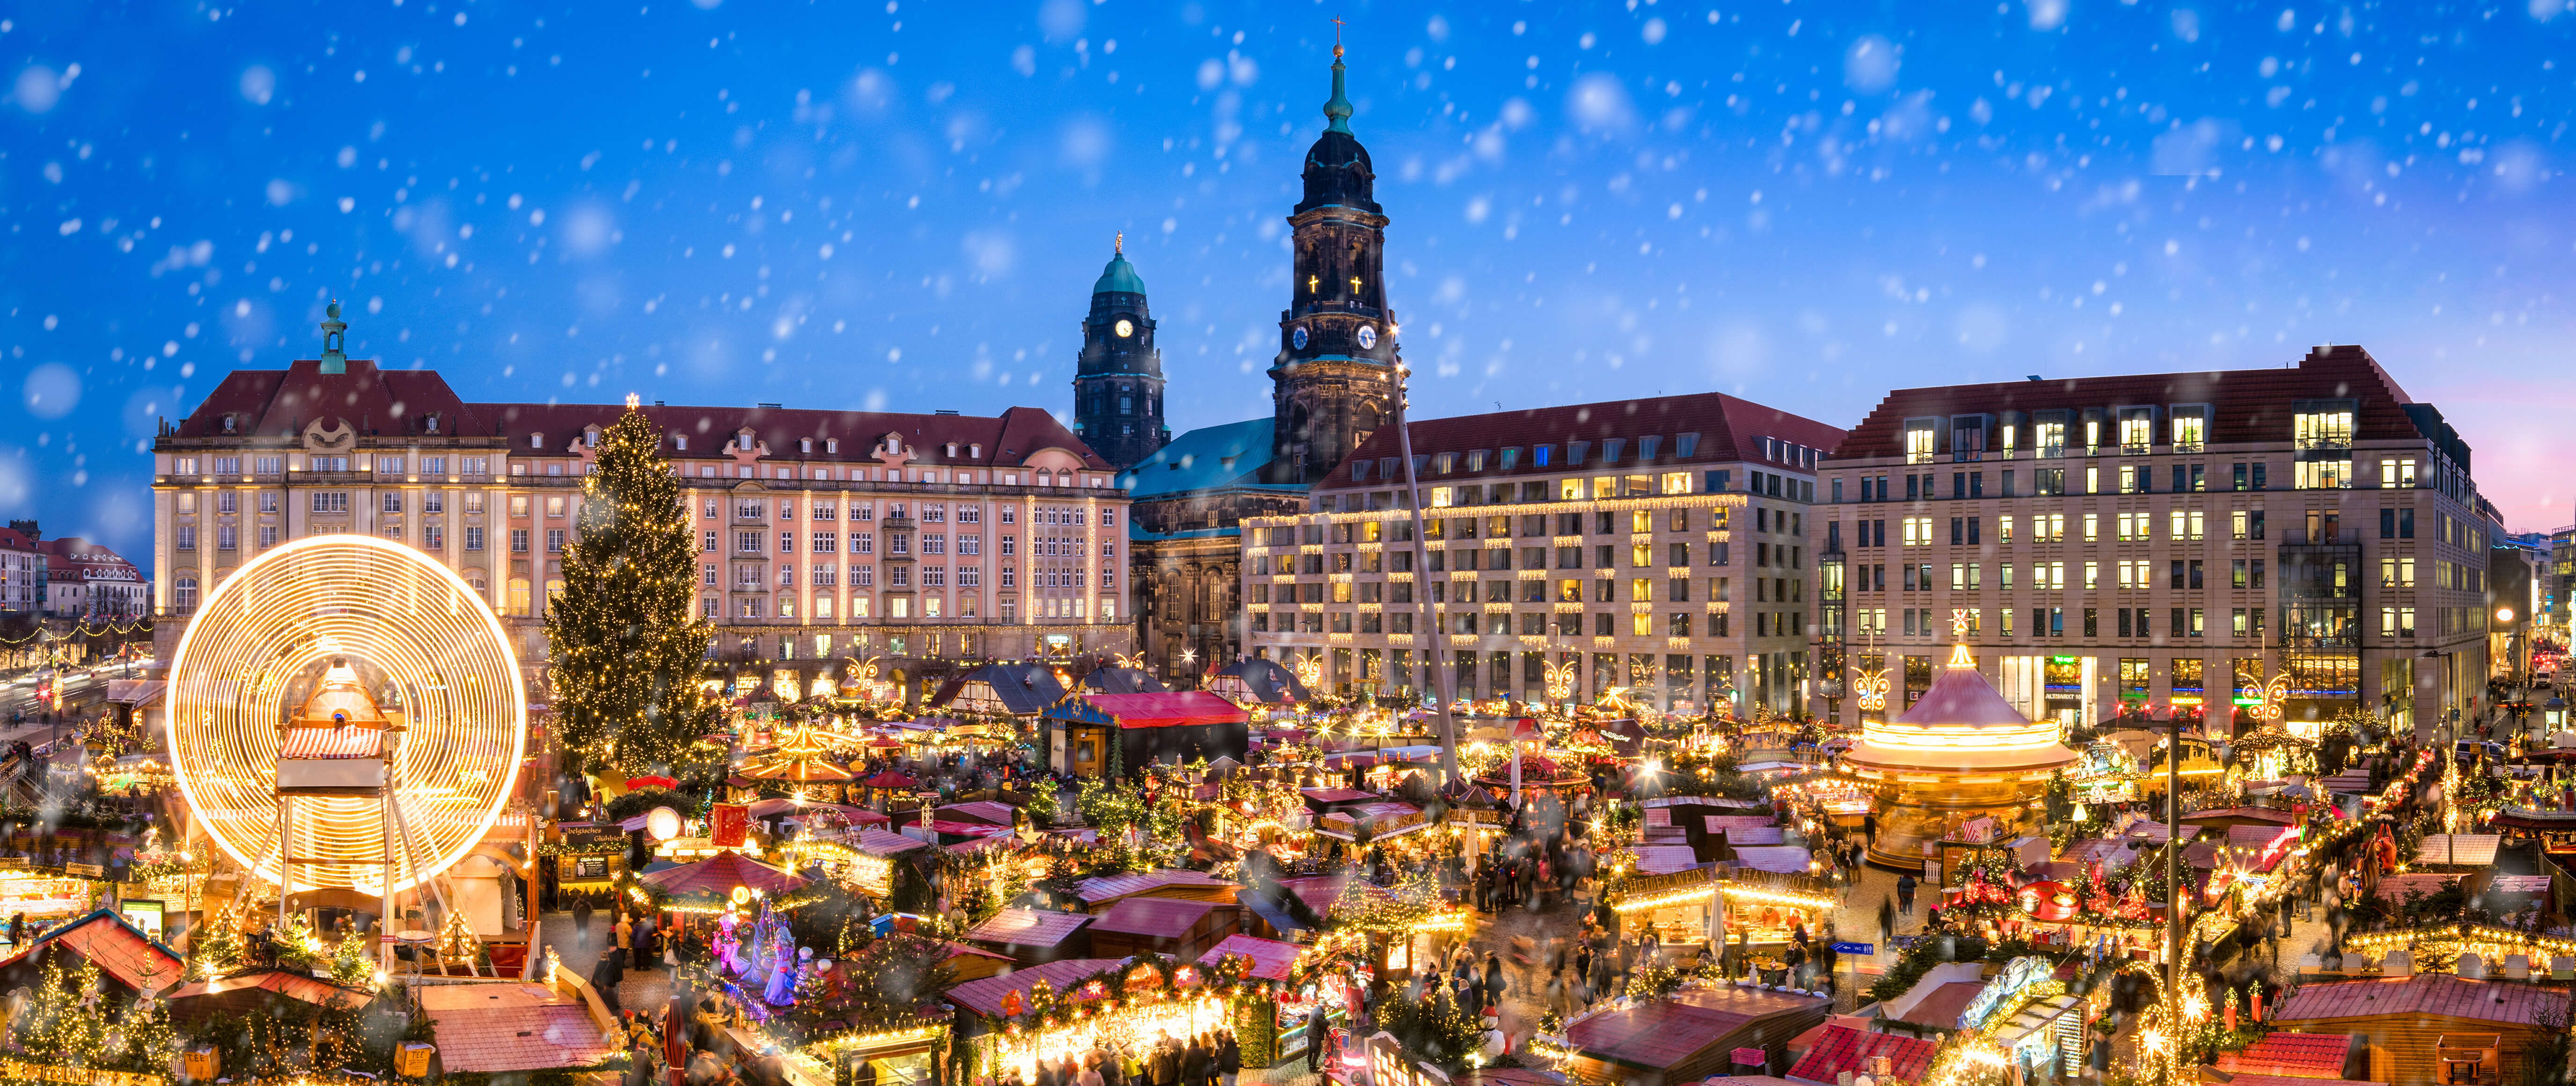 Die besten Weihnachtsmärkte in Deutschland